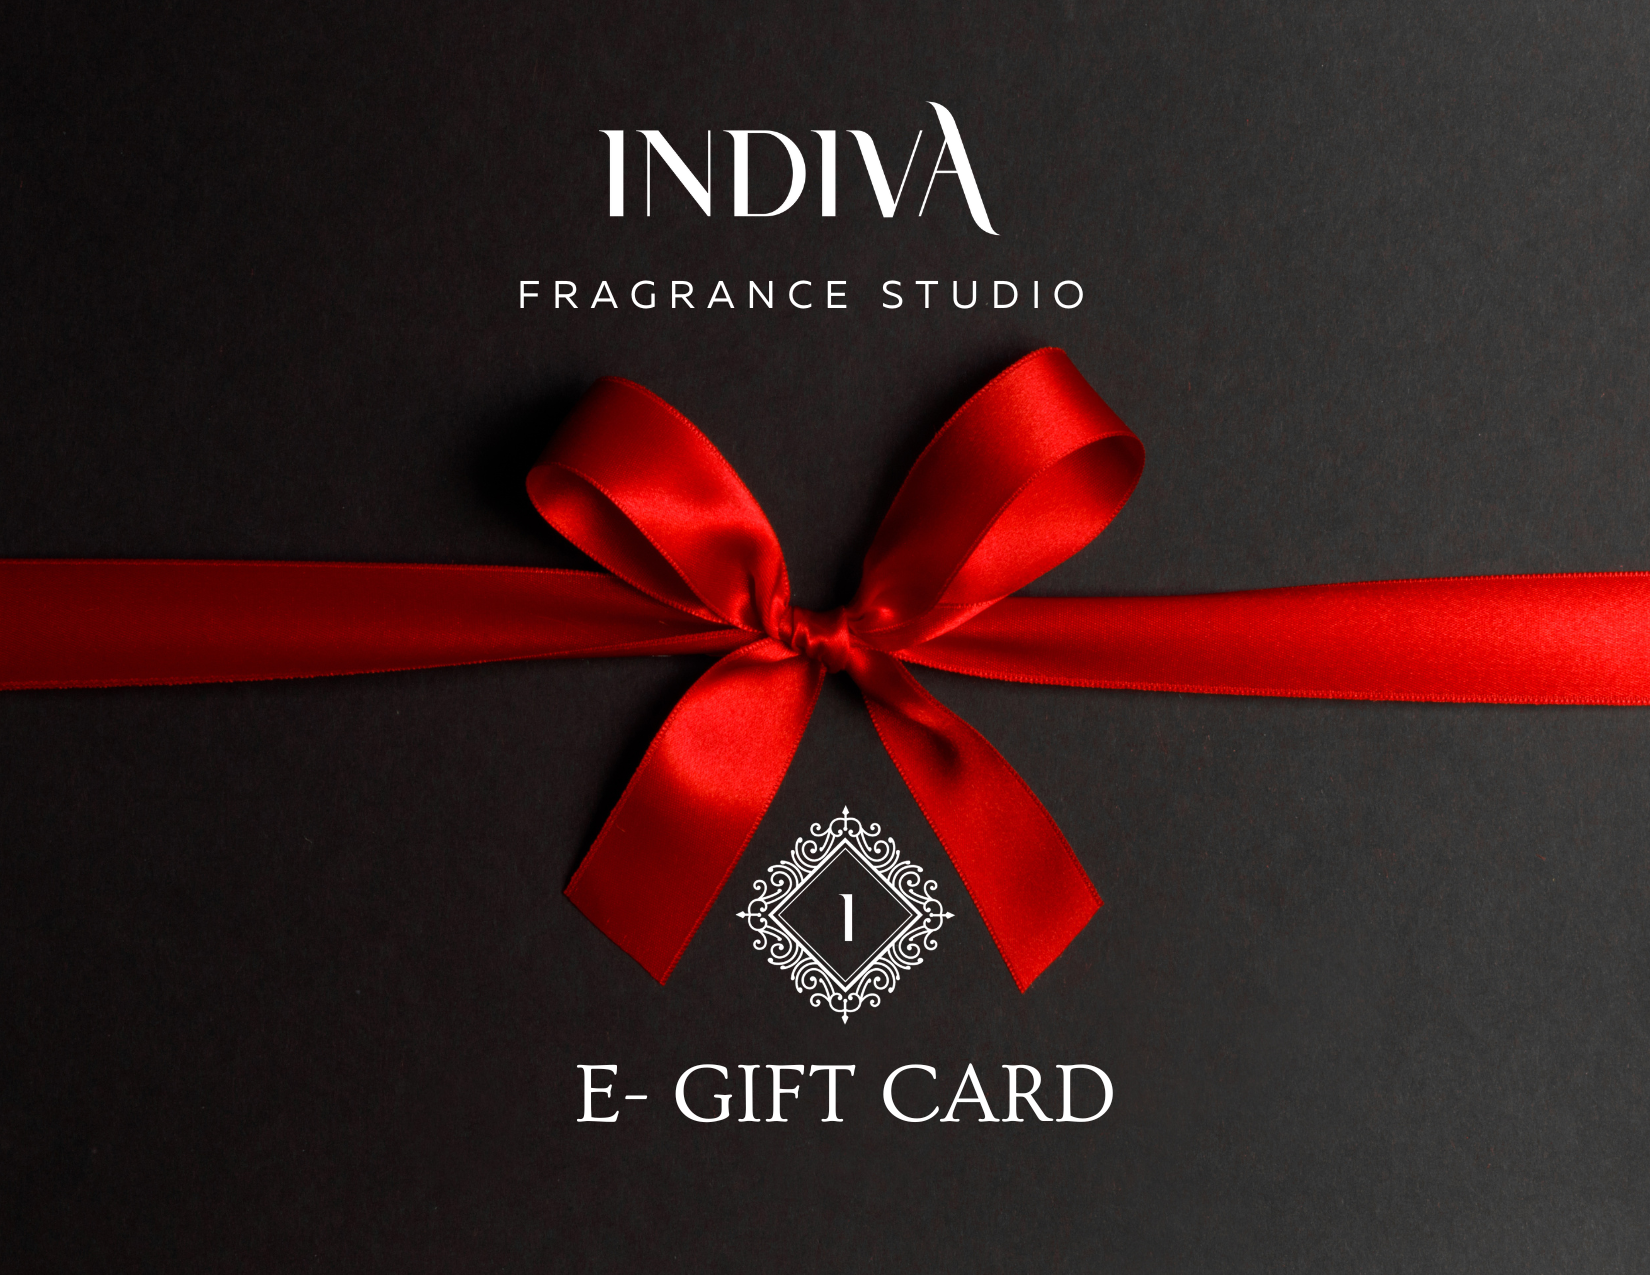 Indiva Fragrance Studio E-GIFT CARD